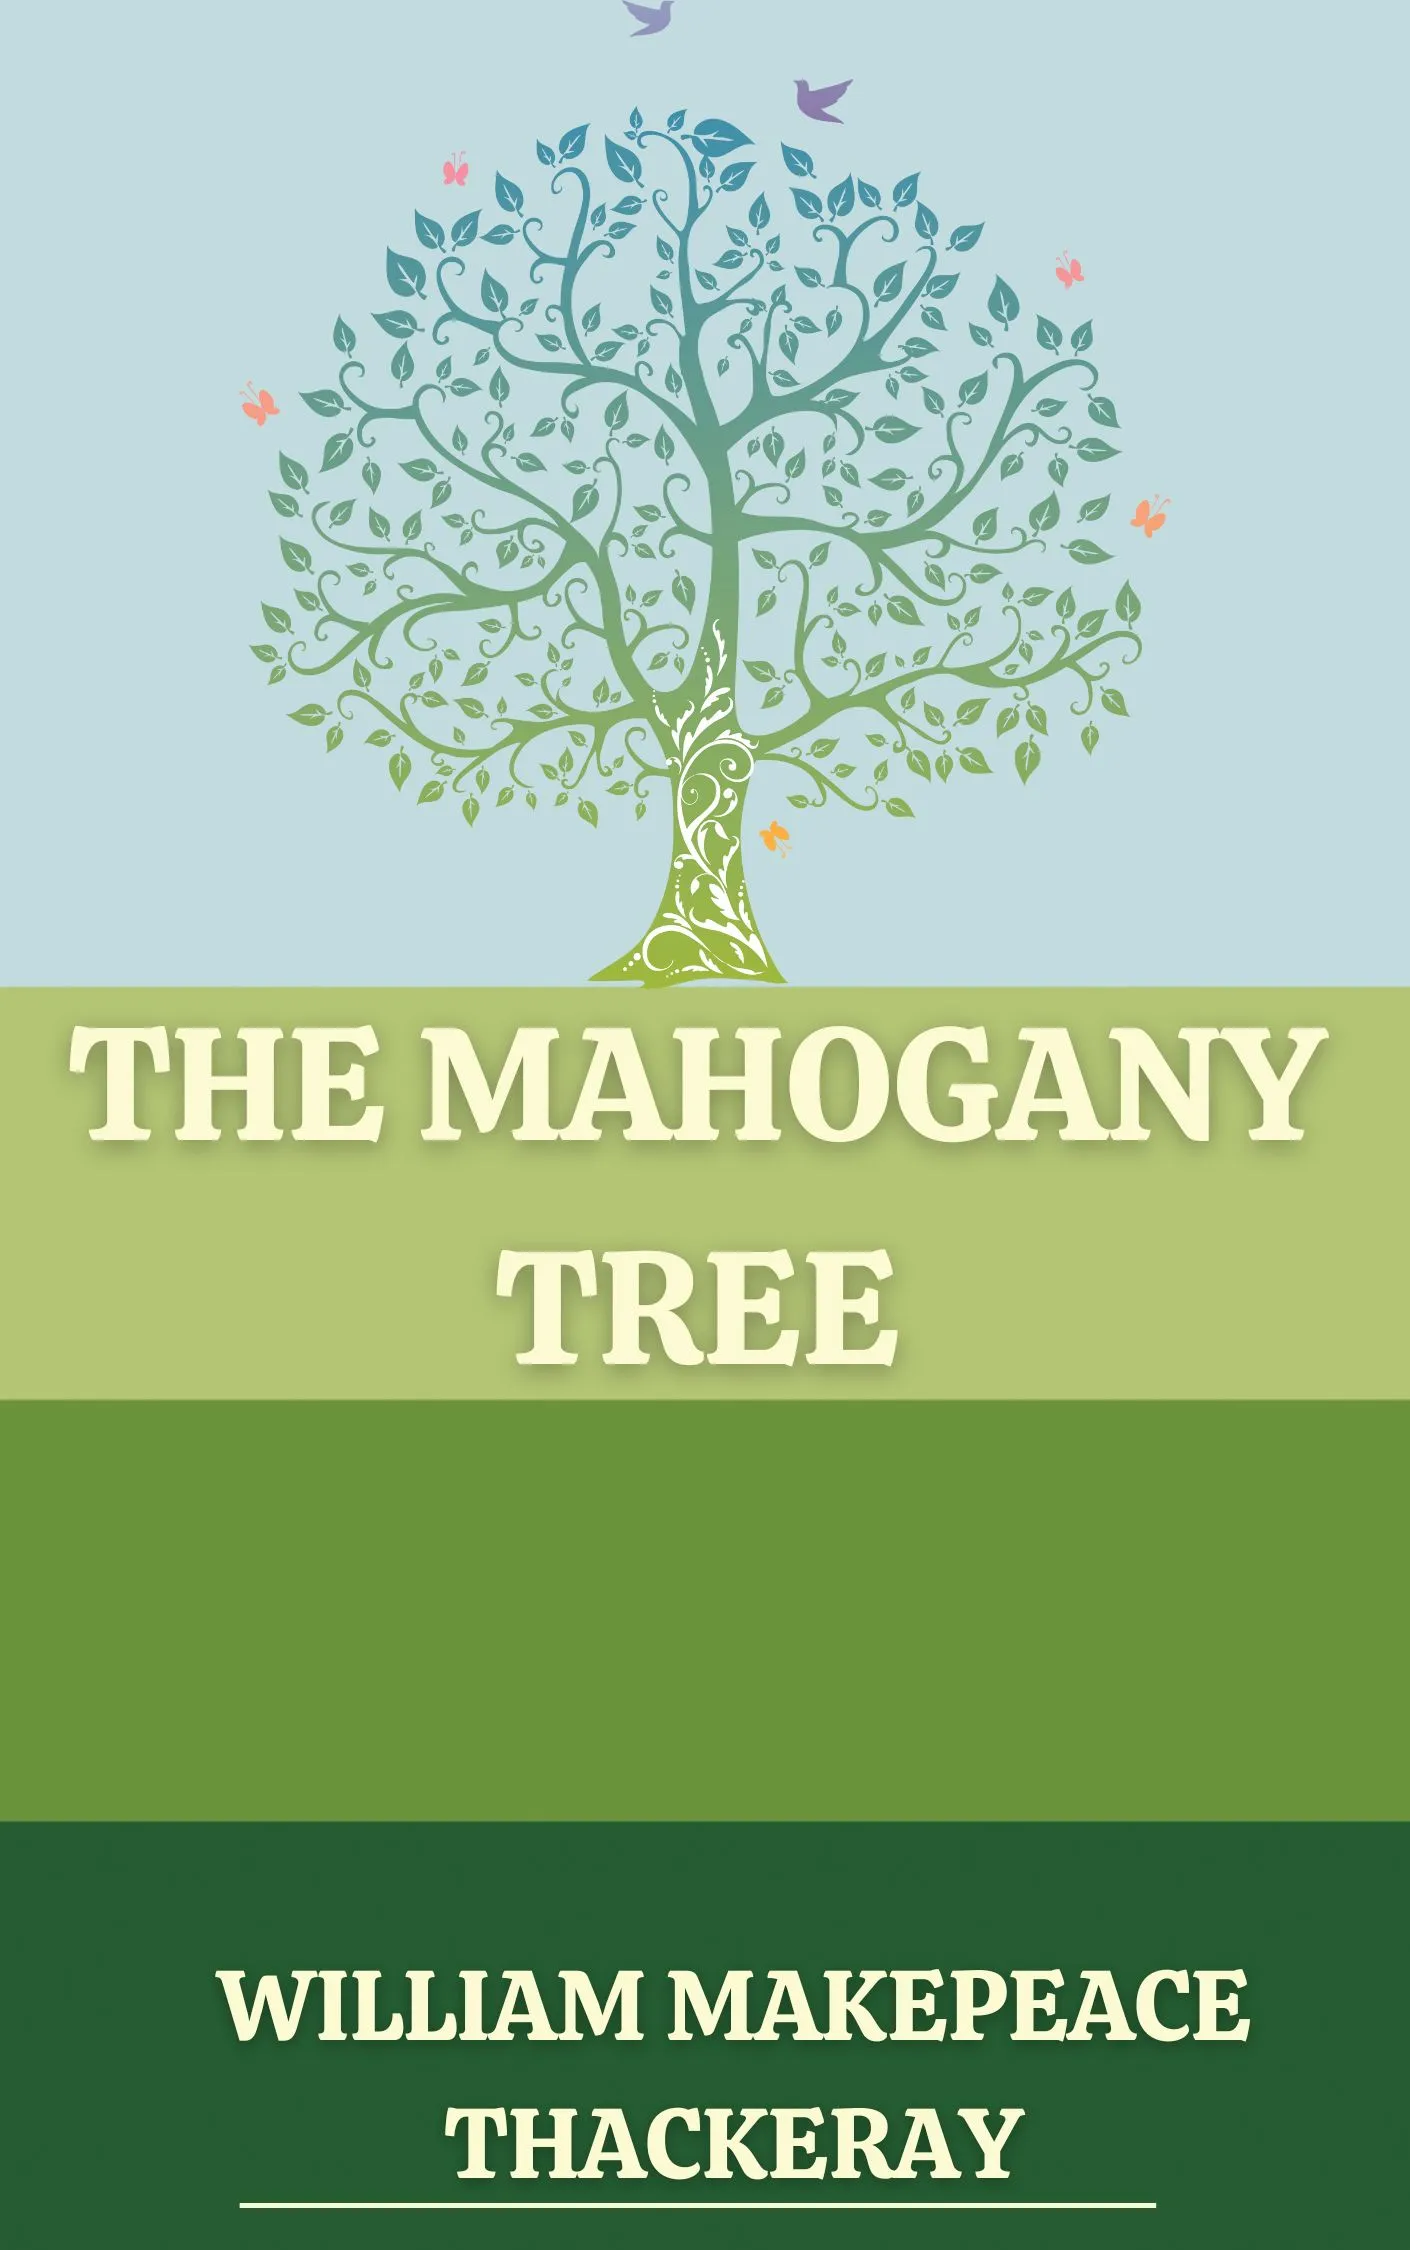 The Mahogany Tree by William Makepeace Thackeray Audiobook